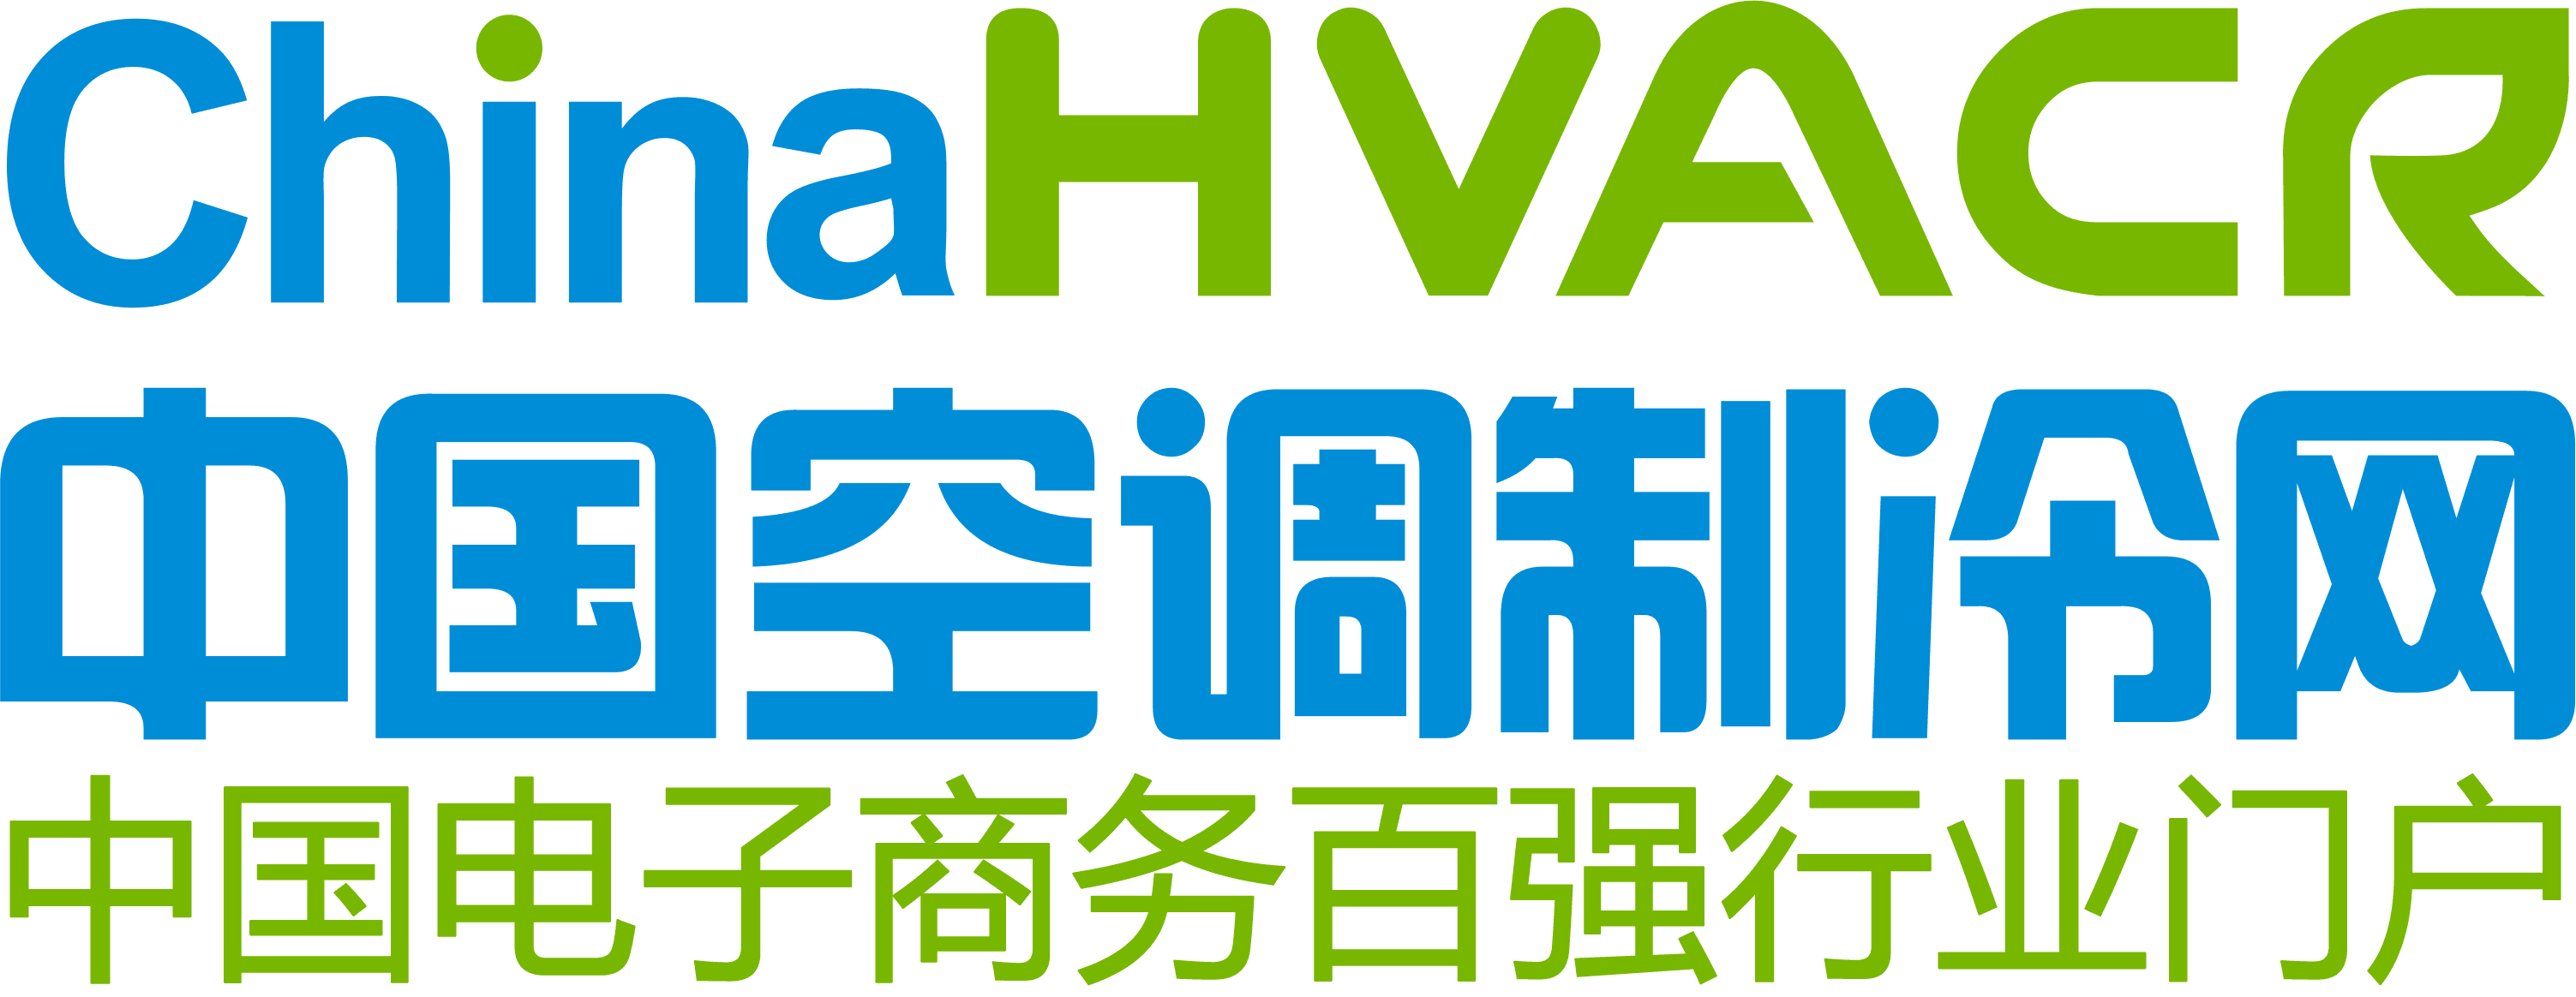 www.chinahvacr.com